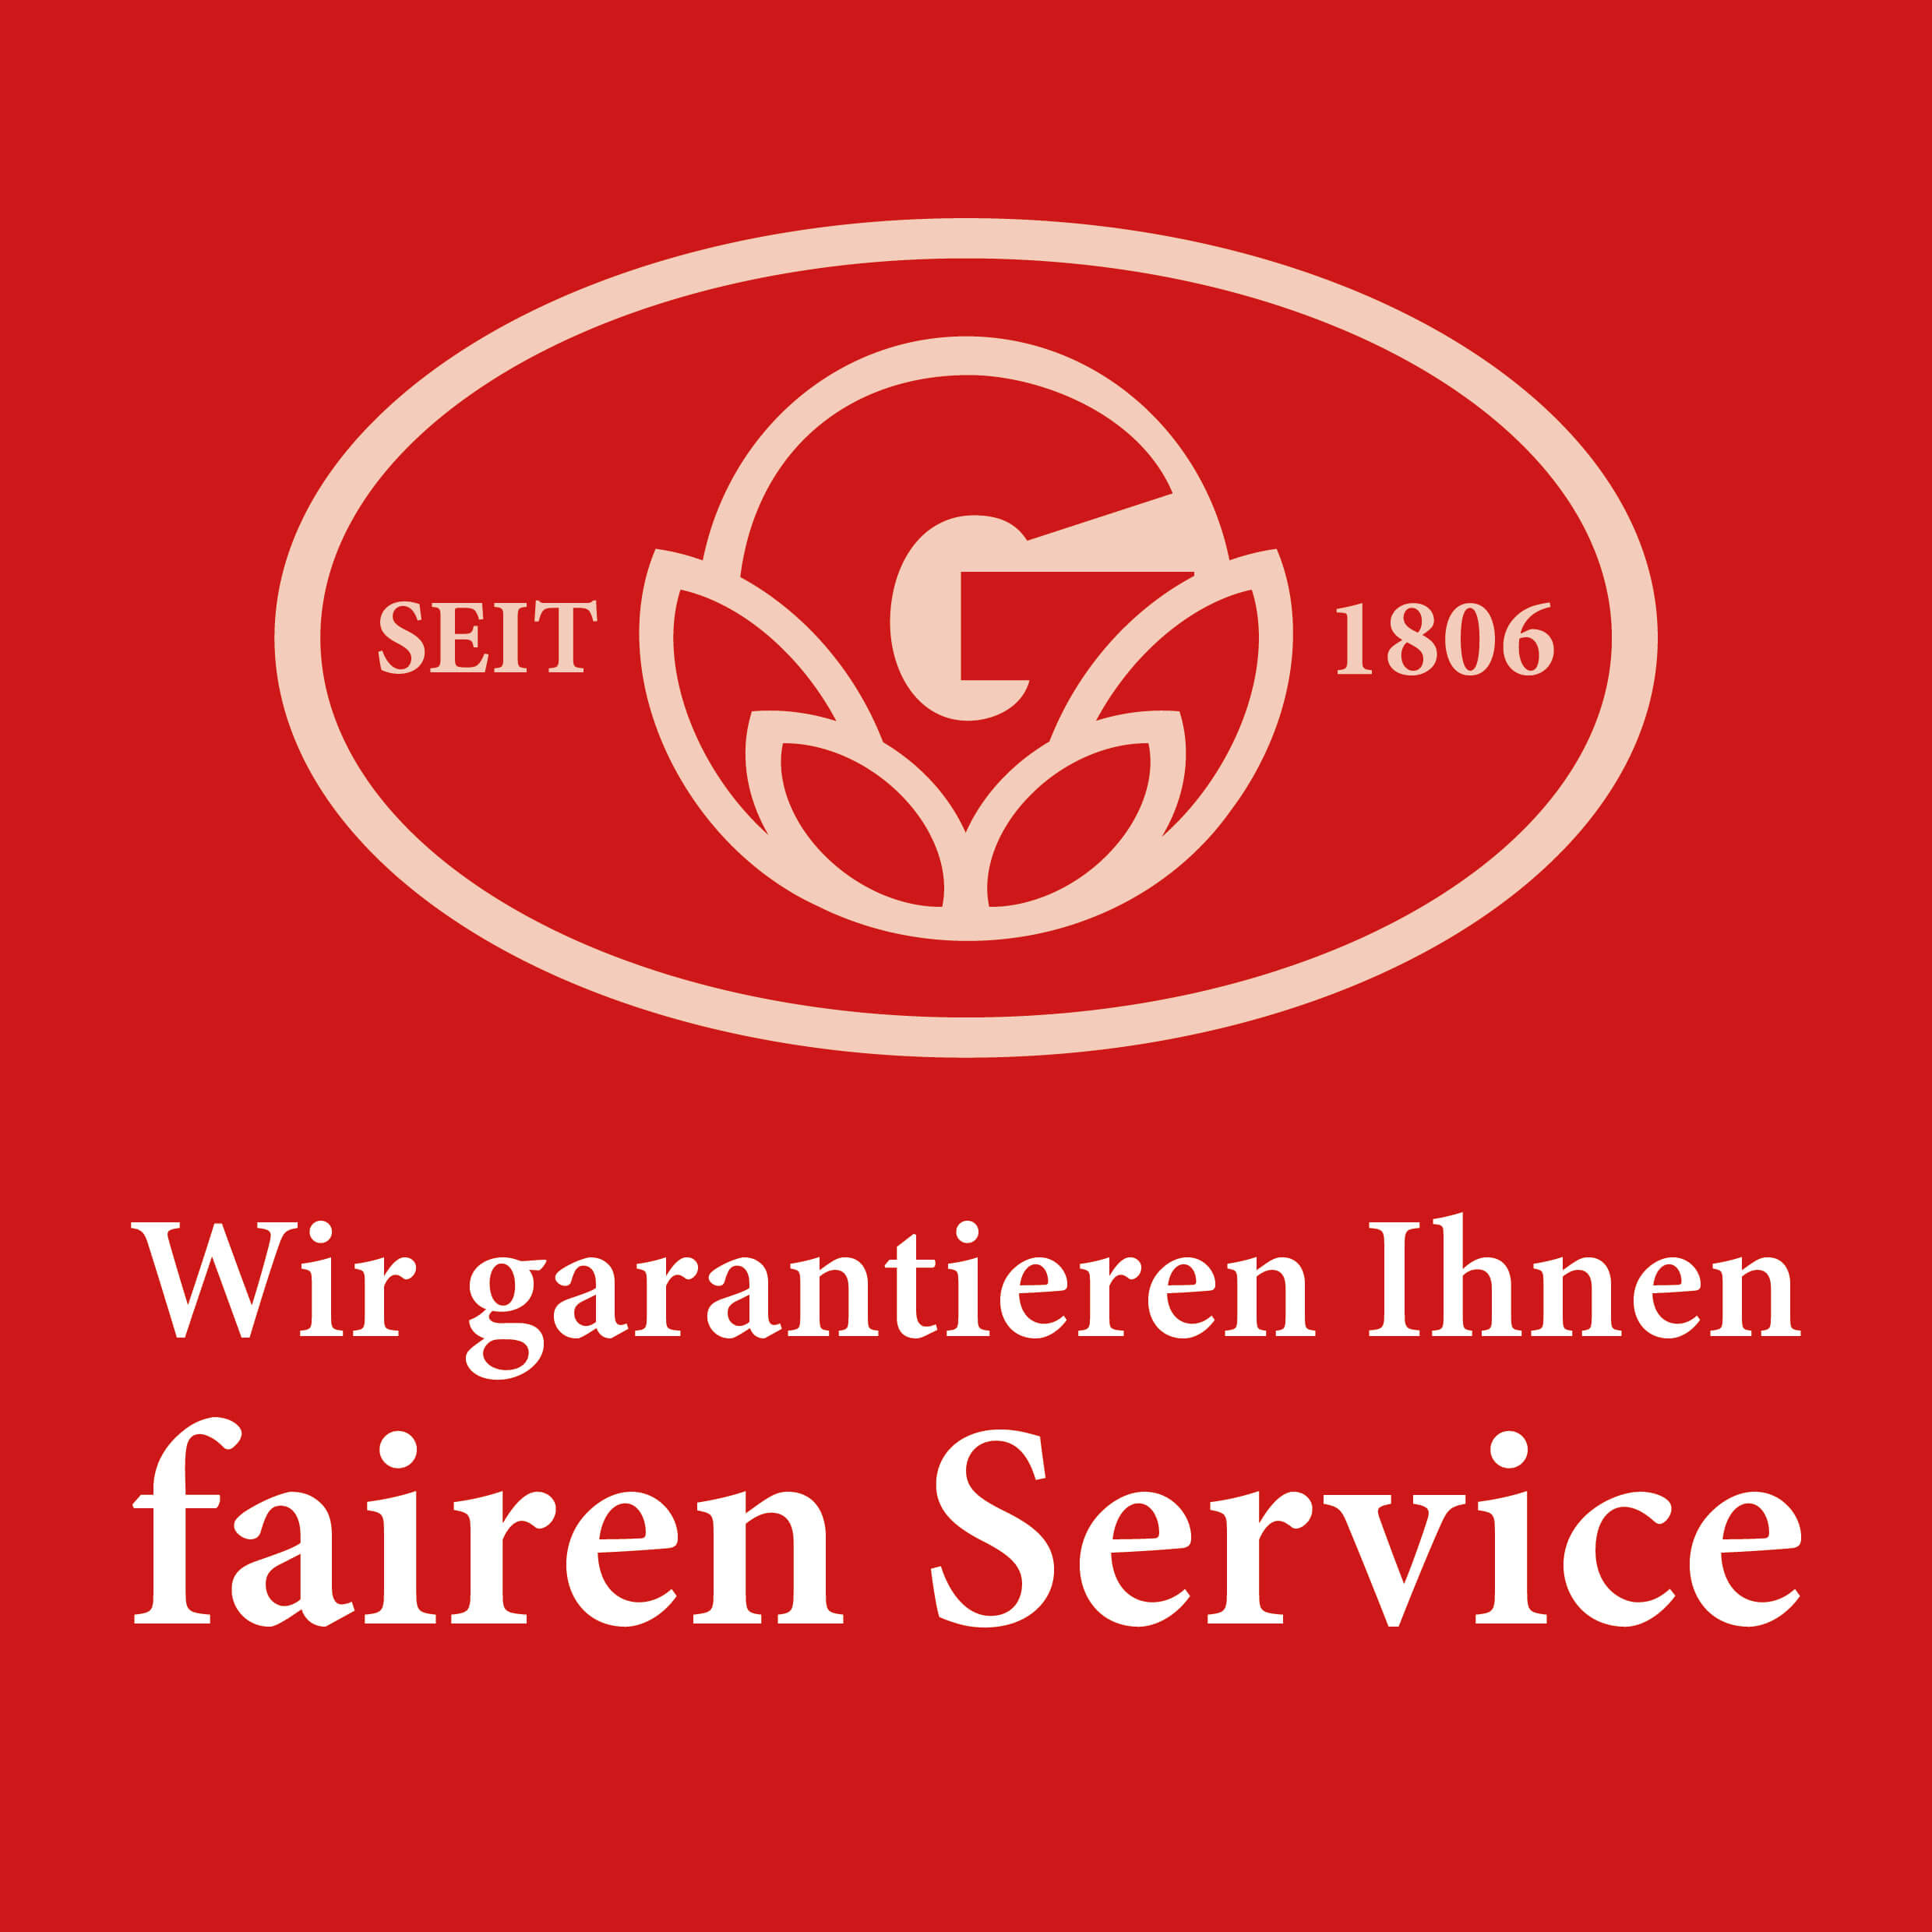 2 Gartenbaugruppe Logo Fairer Service